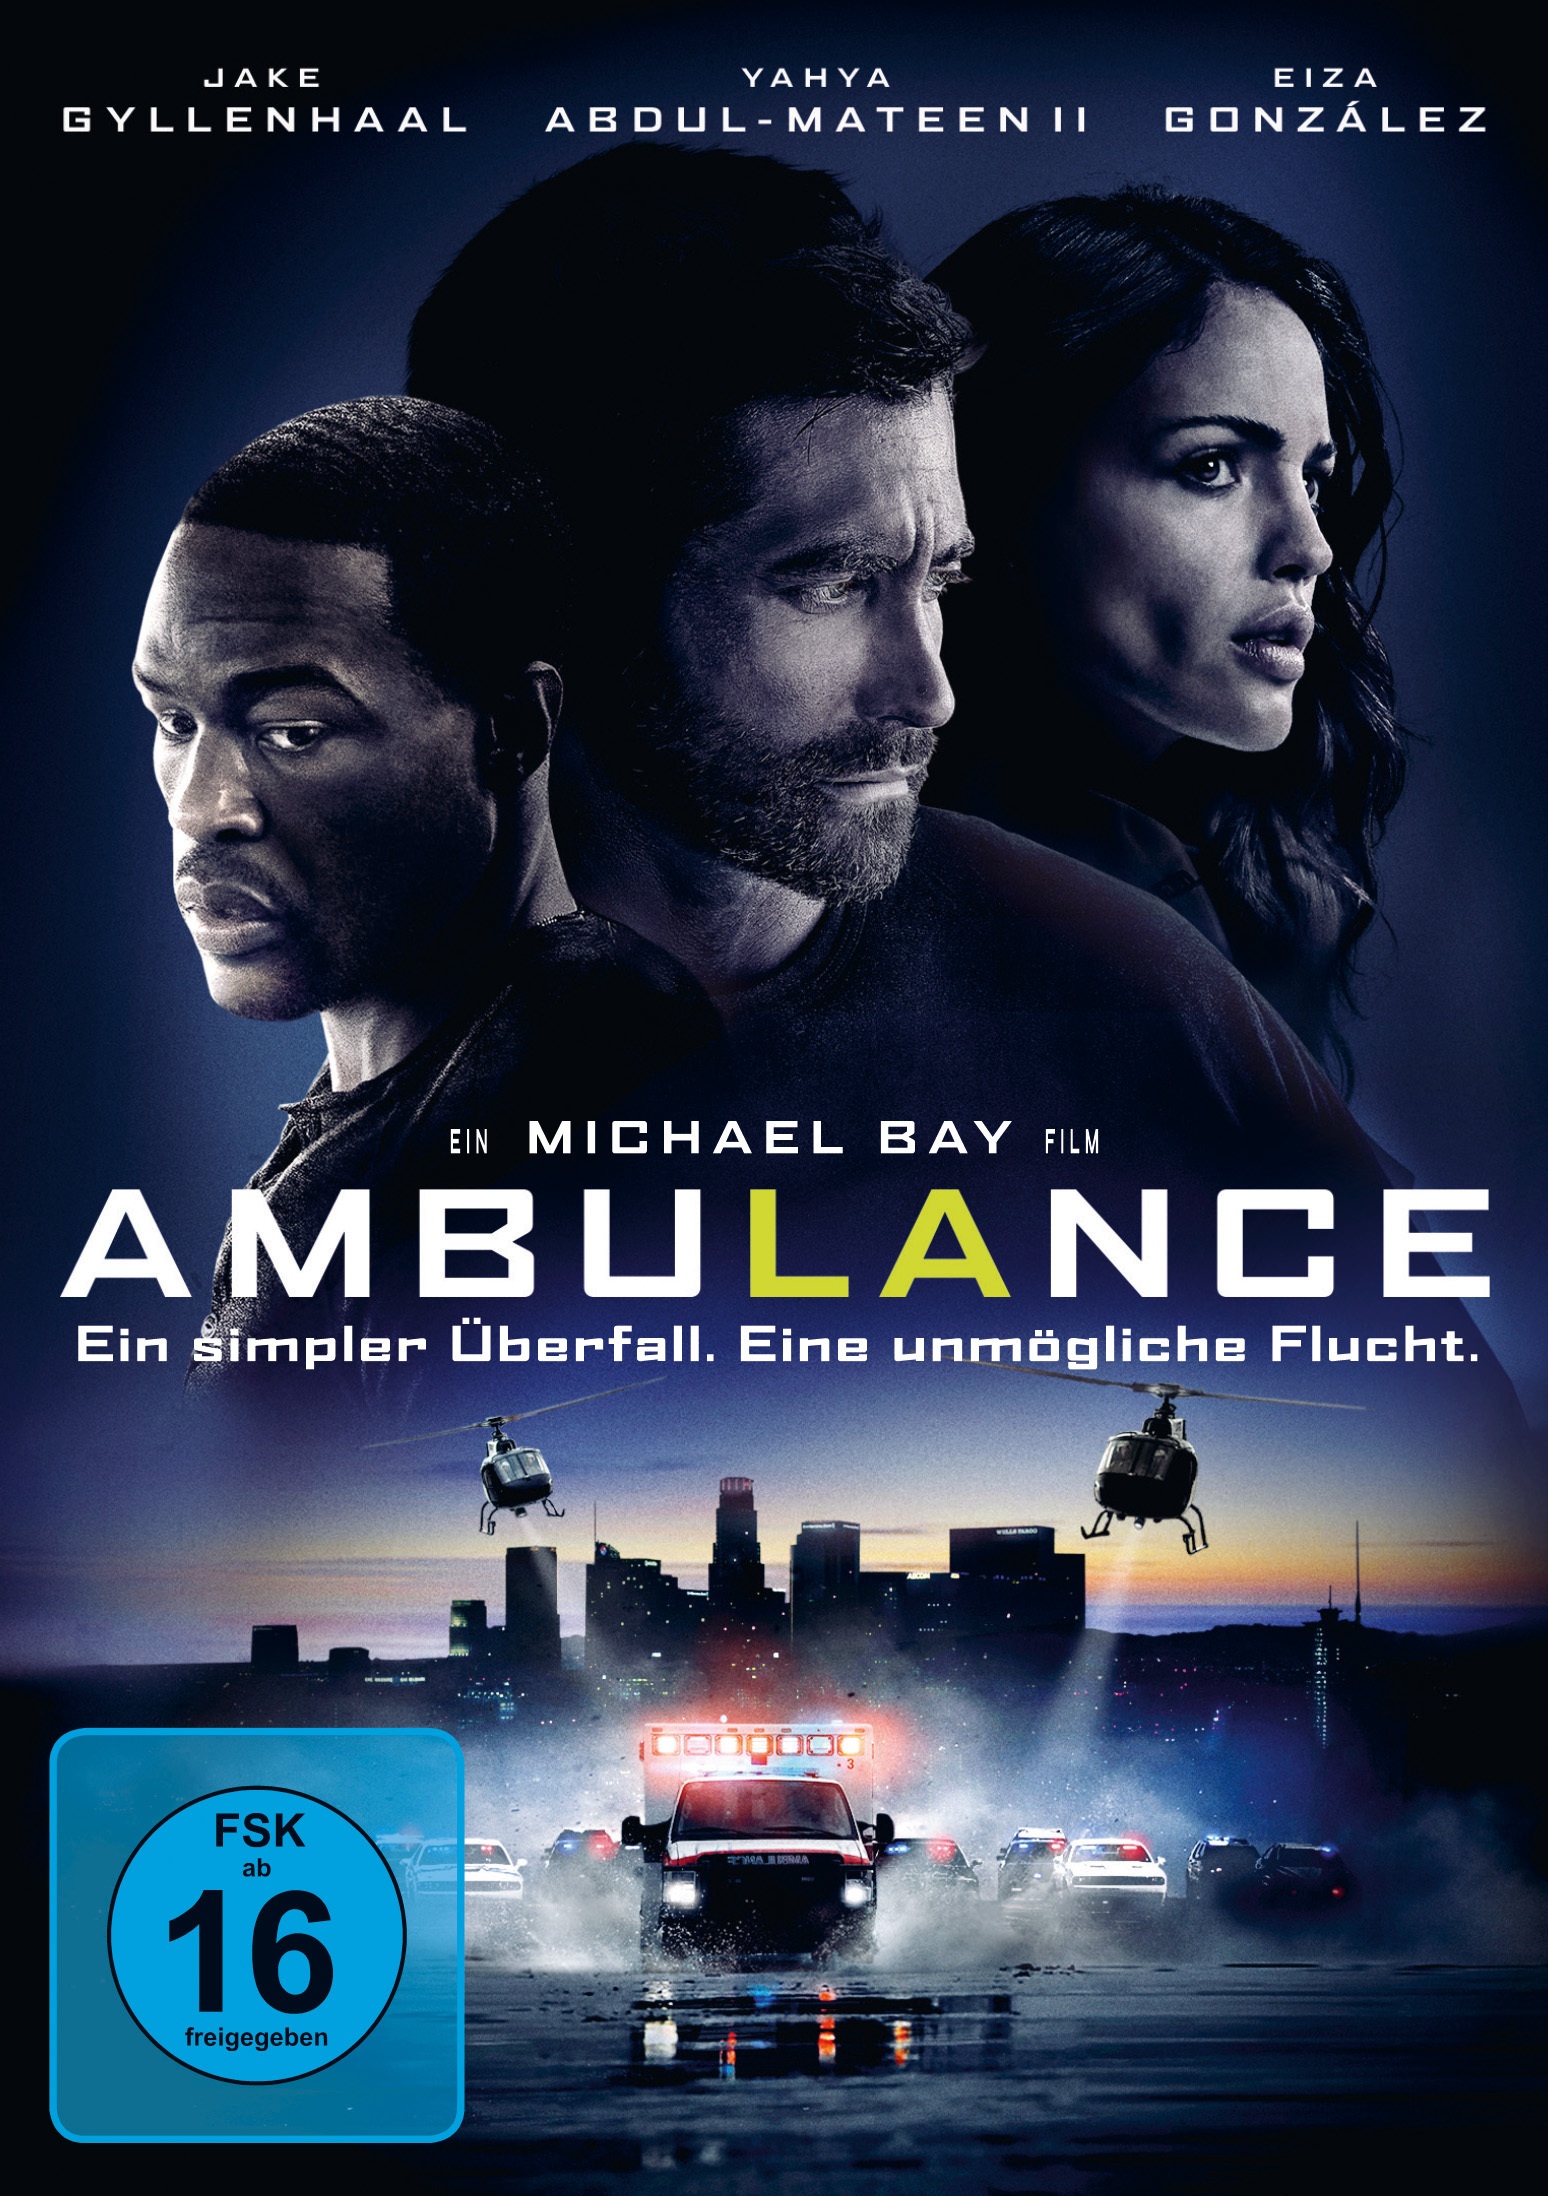 Ambulance (DVD)